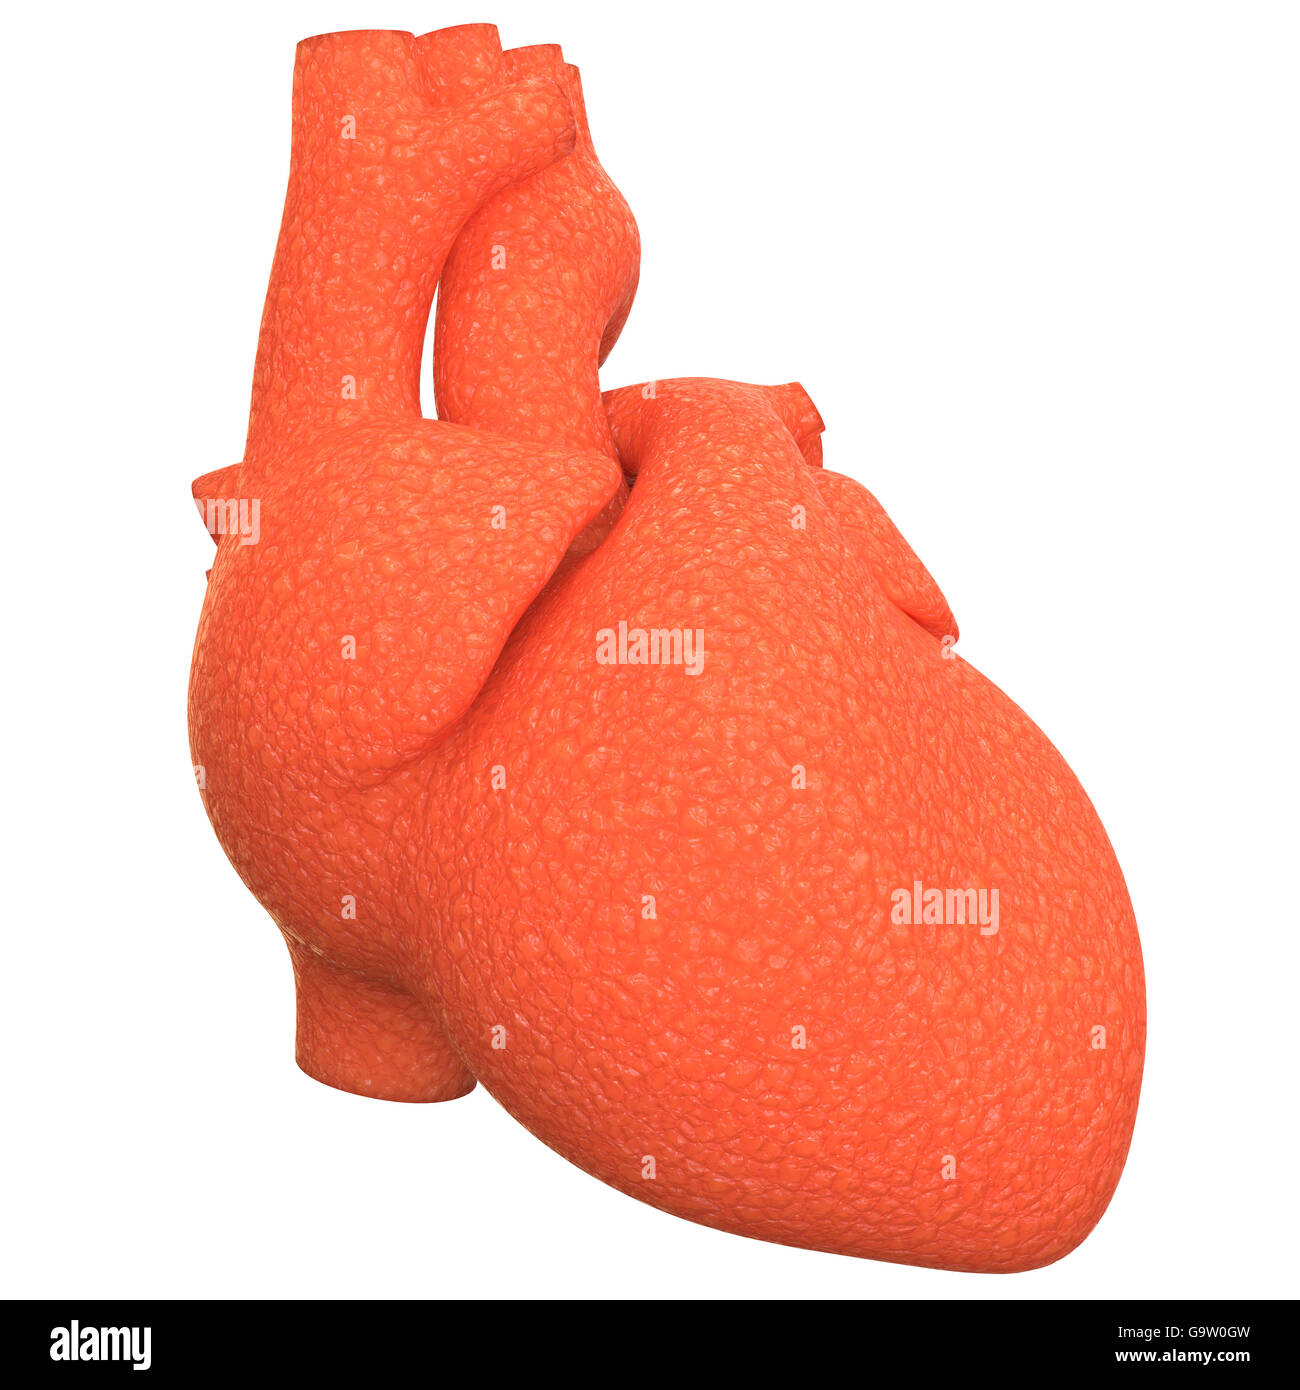 Anatomía del Corazón del Sistema Cardiovascular Humano Foto de stock